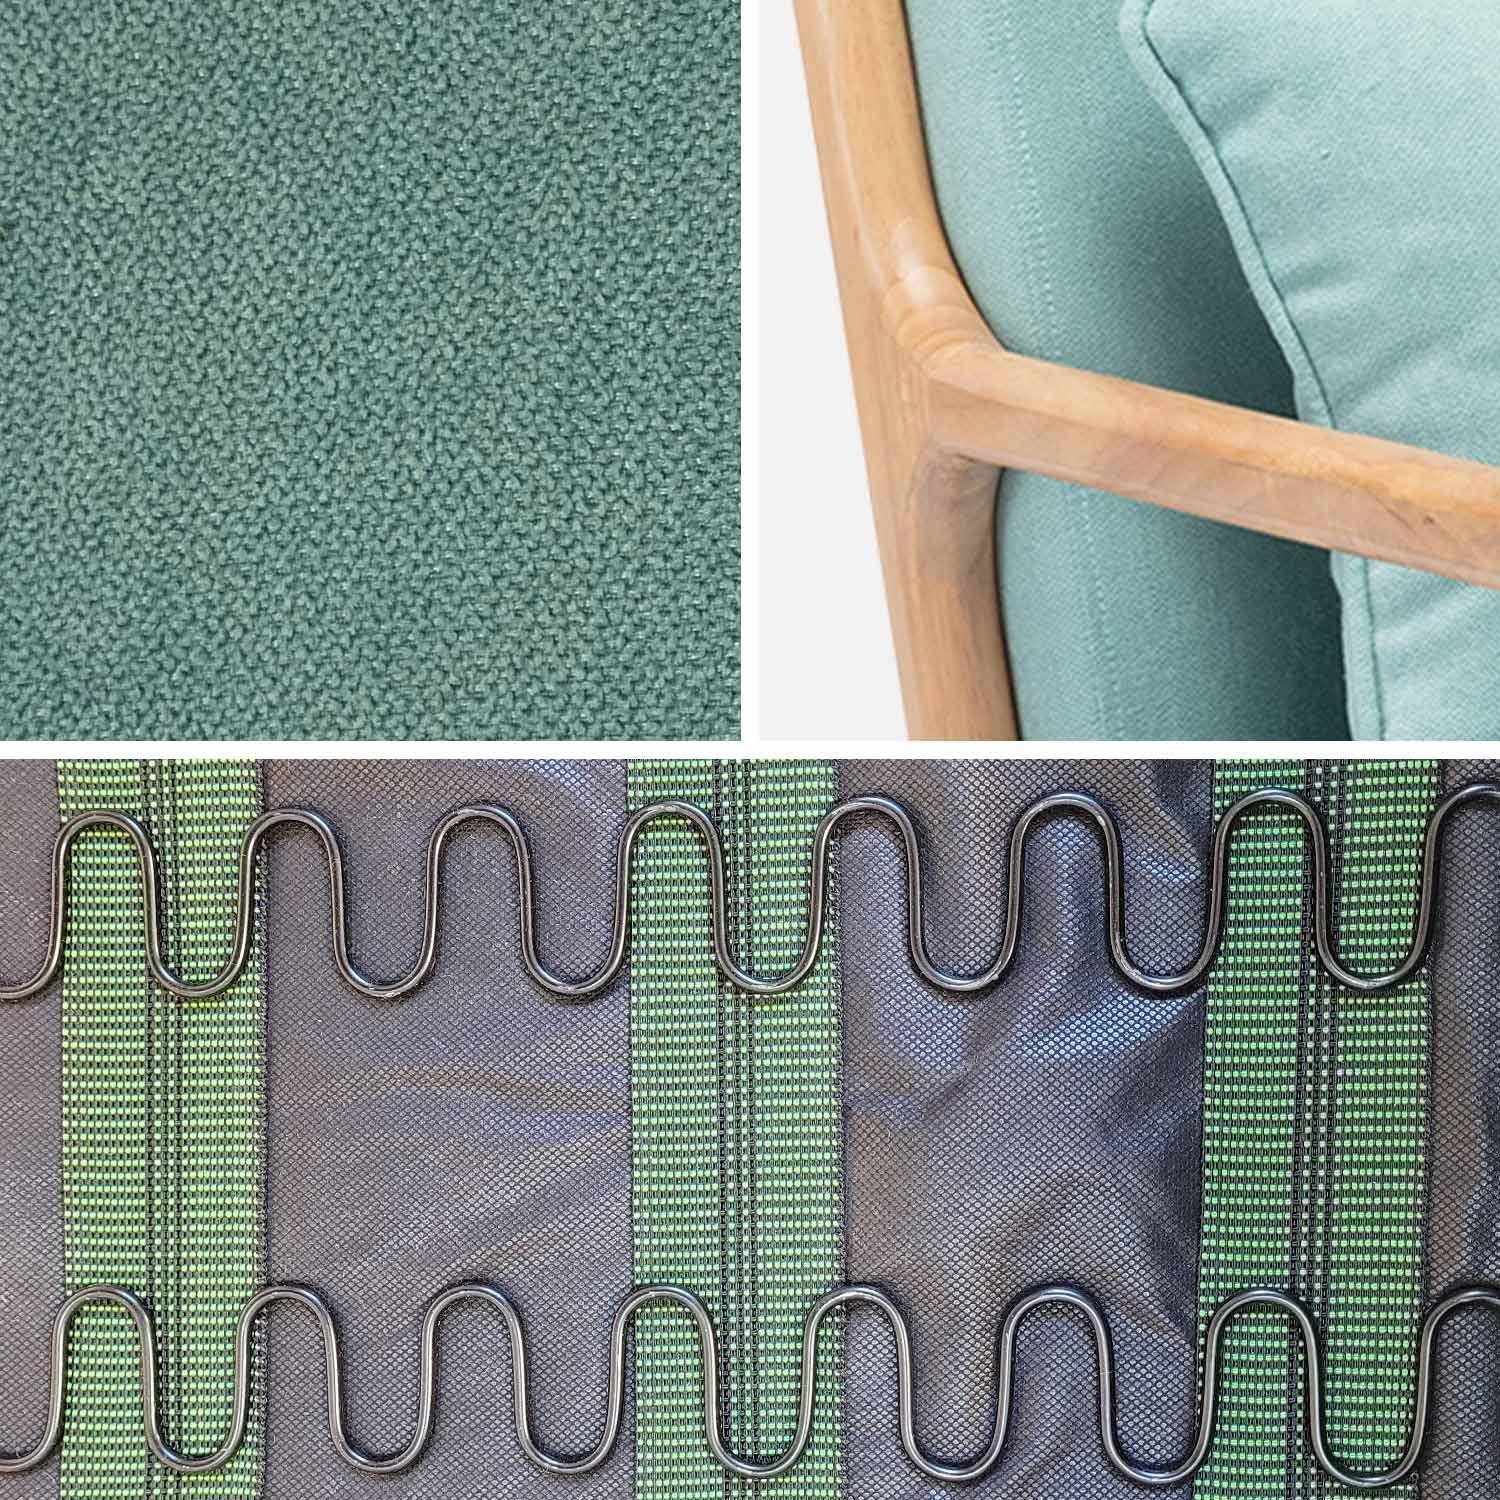 Sillón de diseño en madera y tela, 1 asiento recto fijo, patas de compás escandinavas, verde agua Photo6